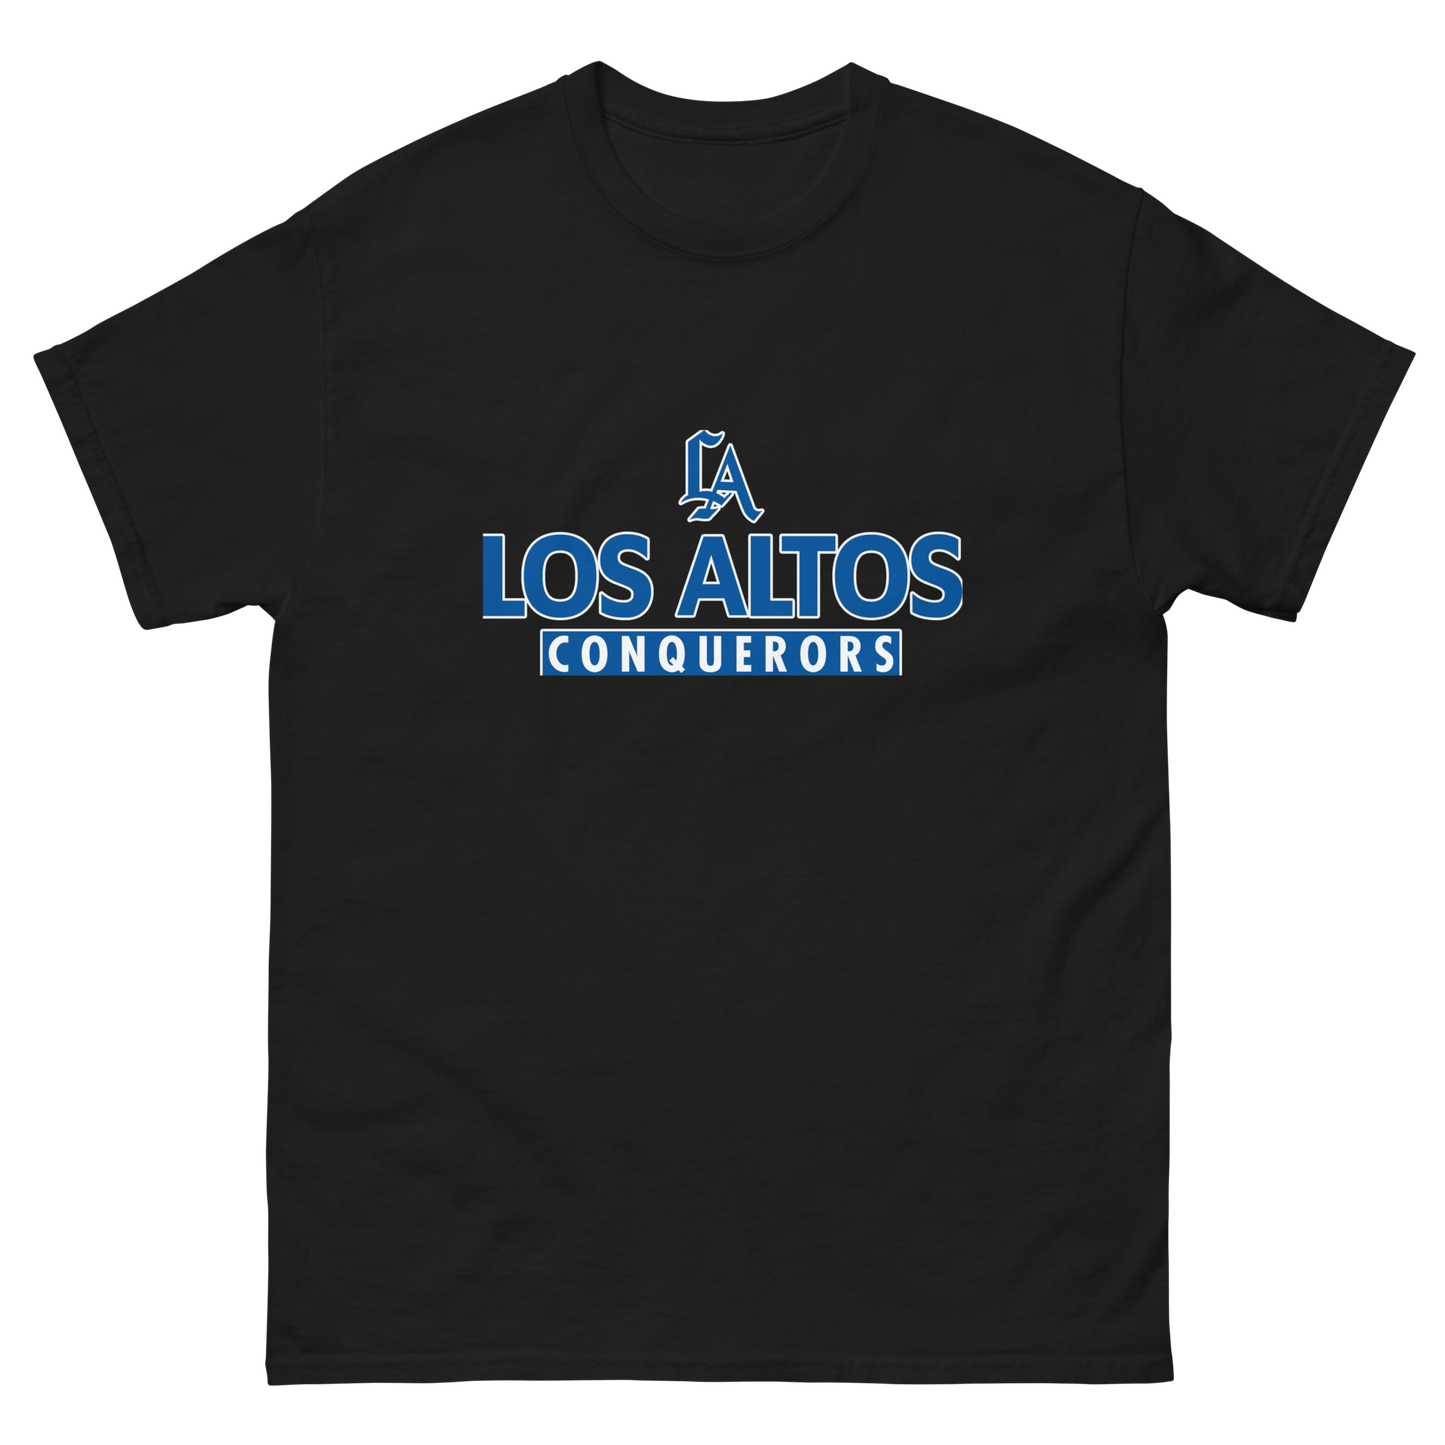 Los Altos Conquerors classic tee